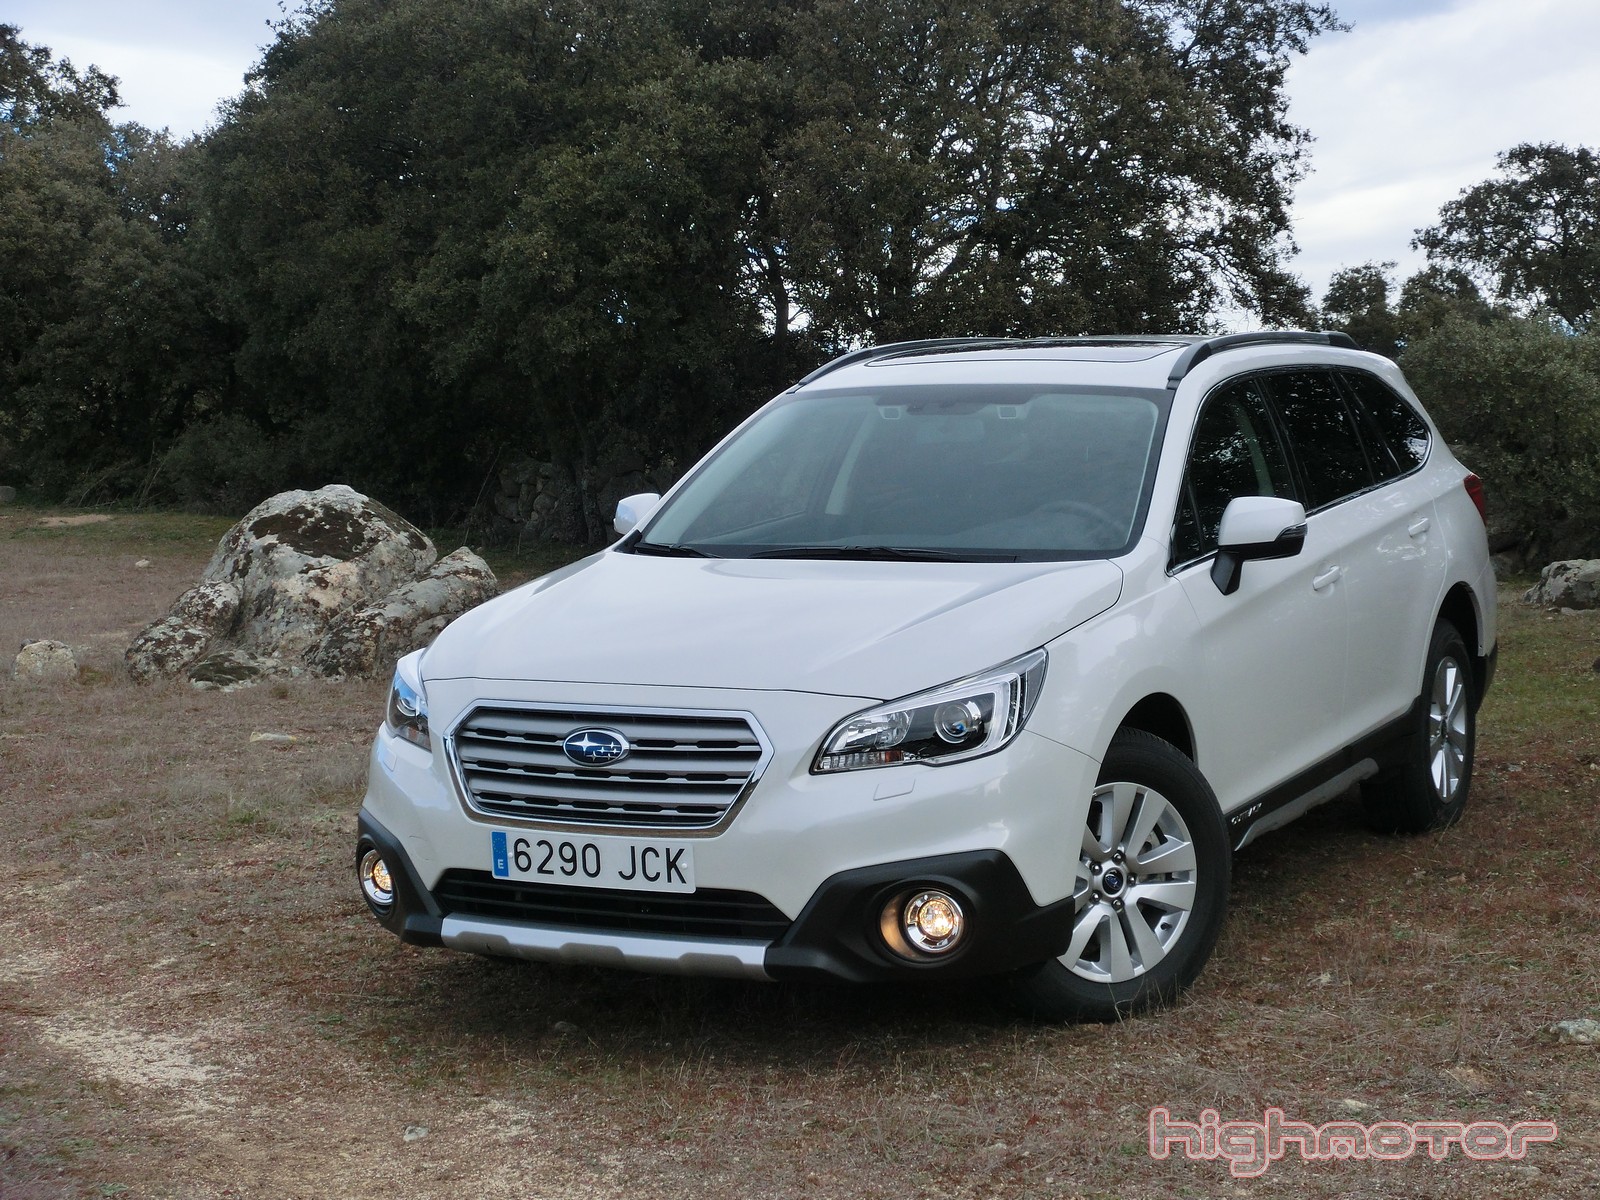 Nuevo Subaru Outback 2015 y Forester 2015, presentación y prueba en Madrid